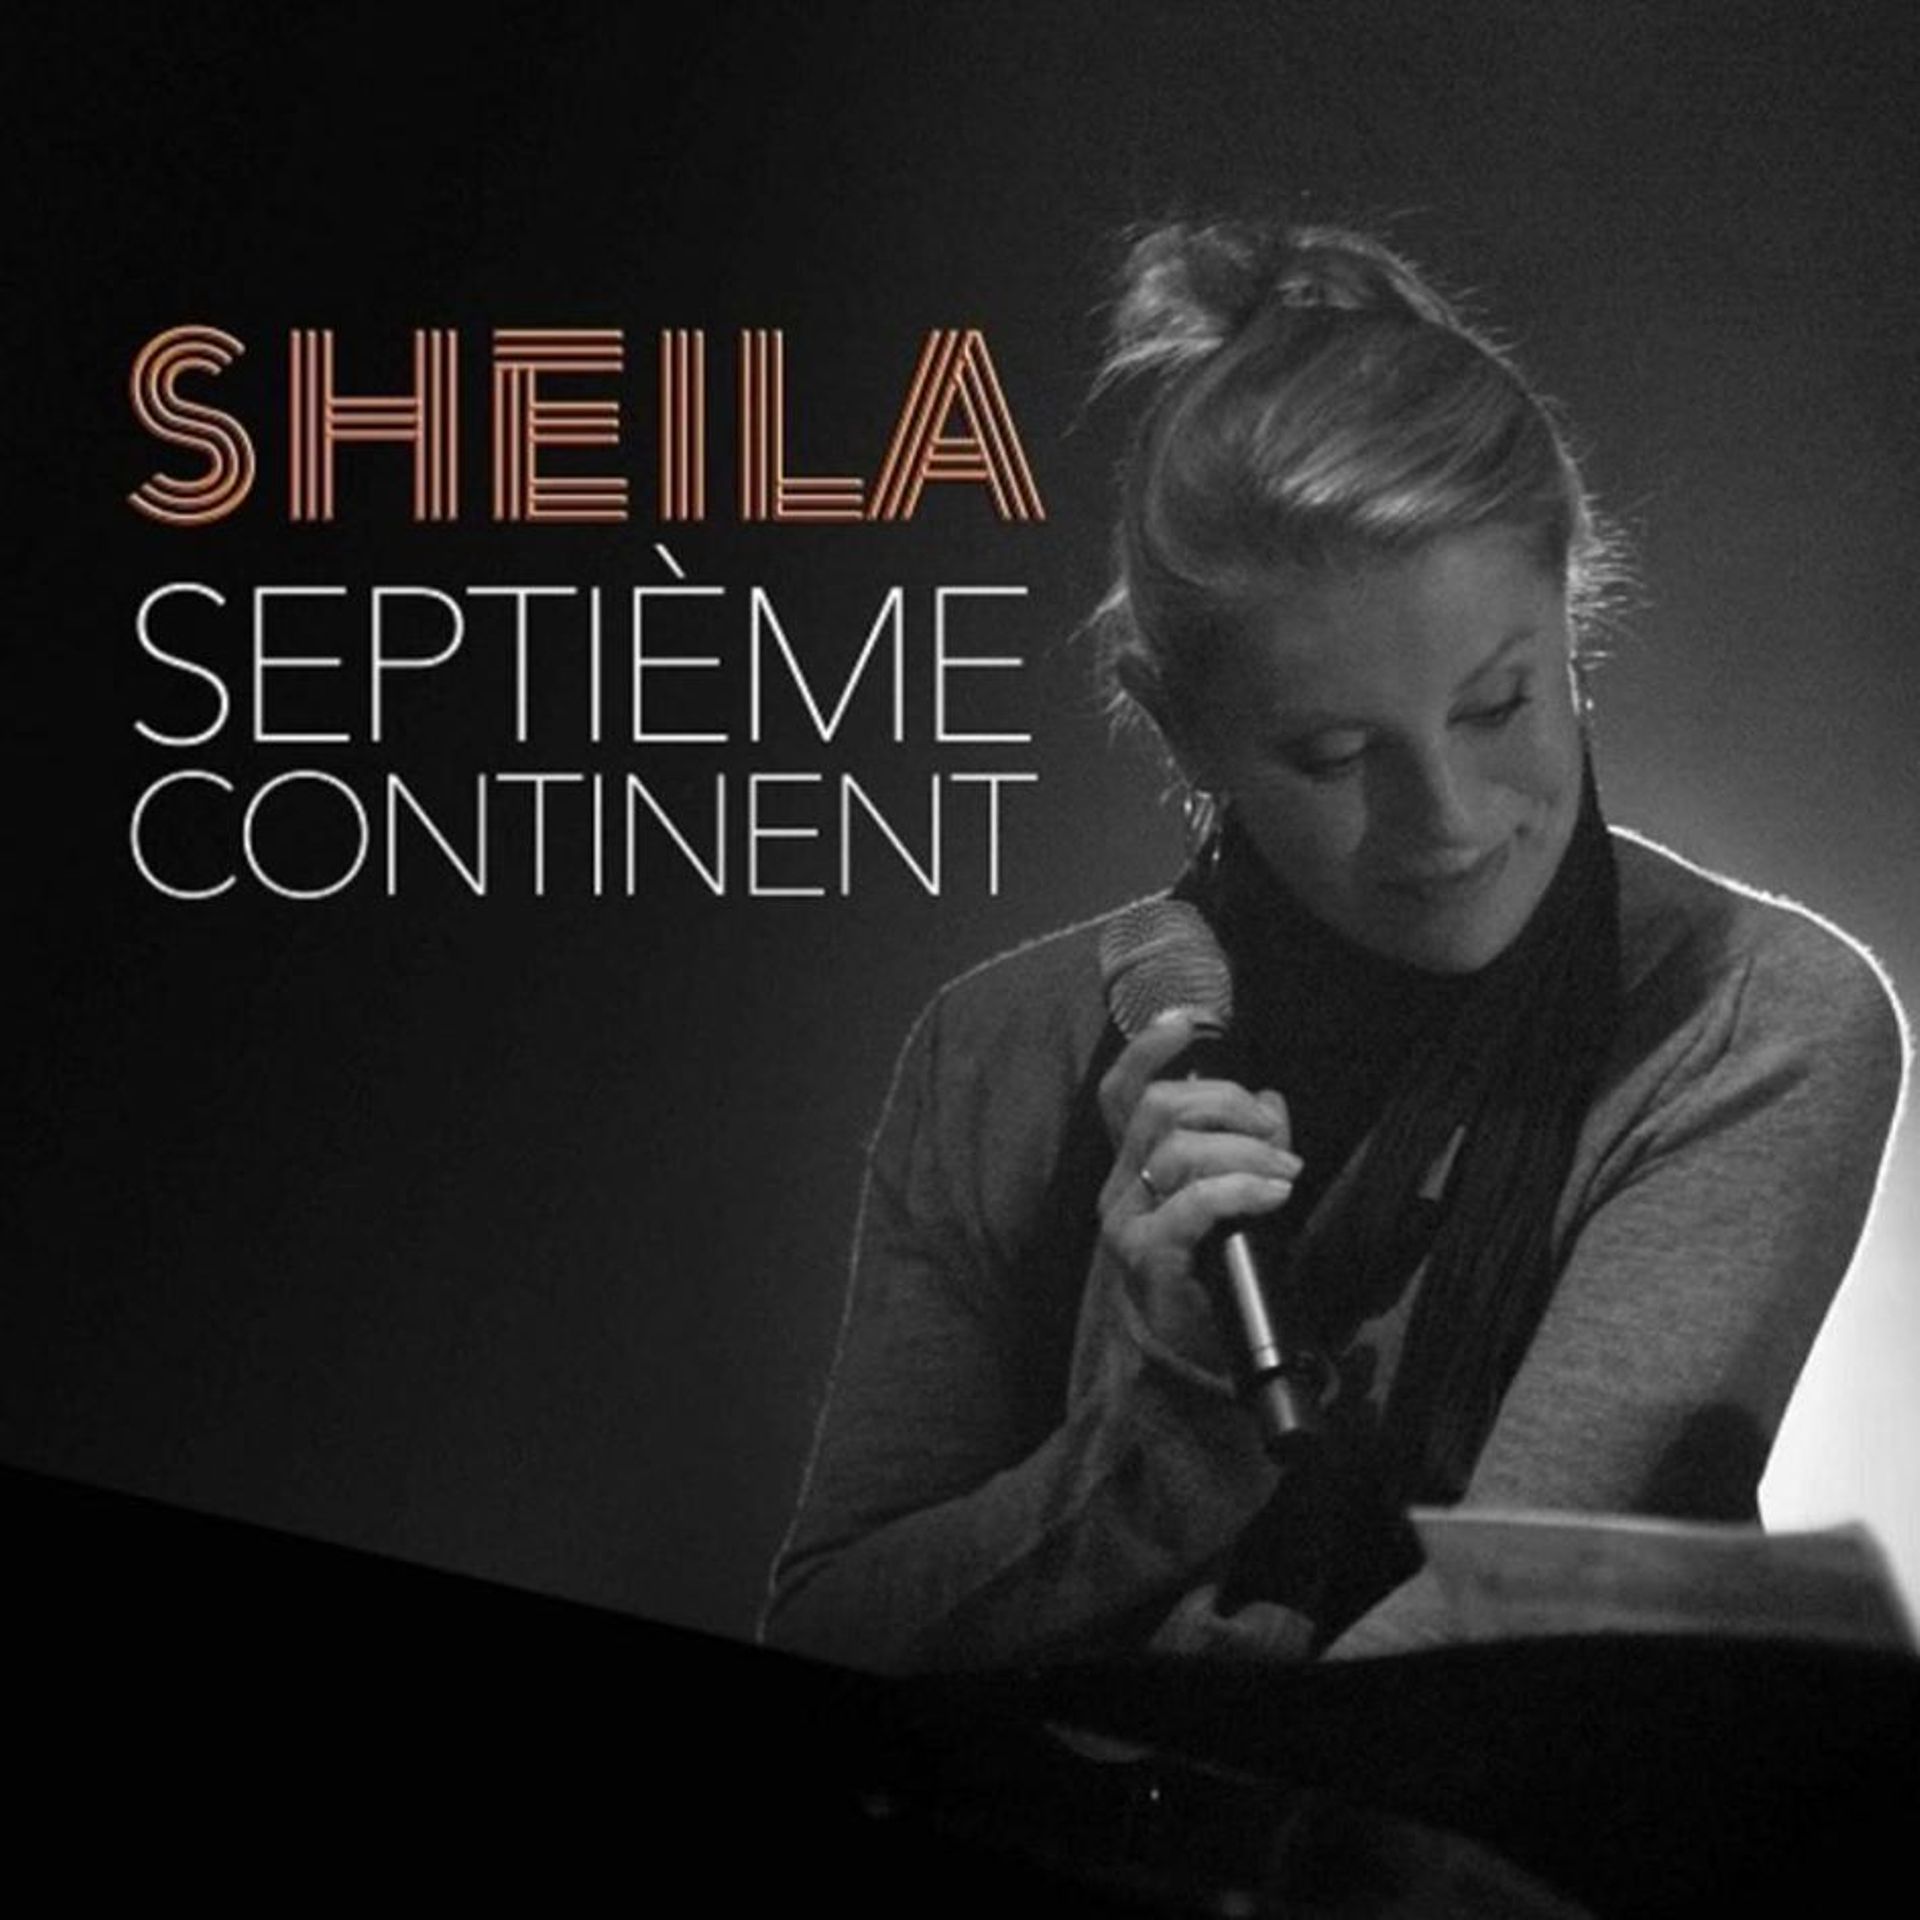 Sheila - Les 60 Ans De Carriere (CD), Sheila, Musique